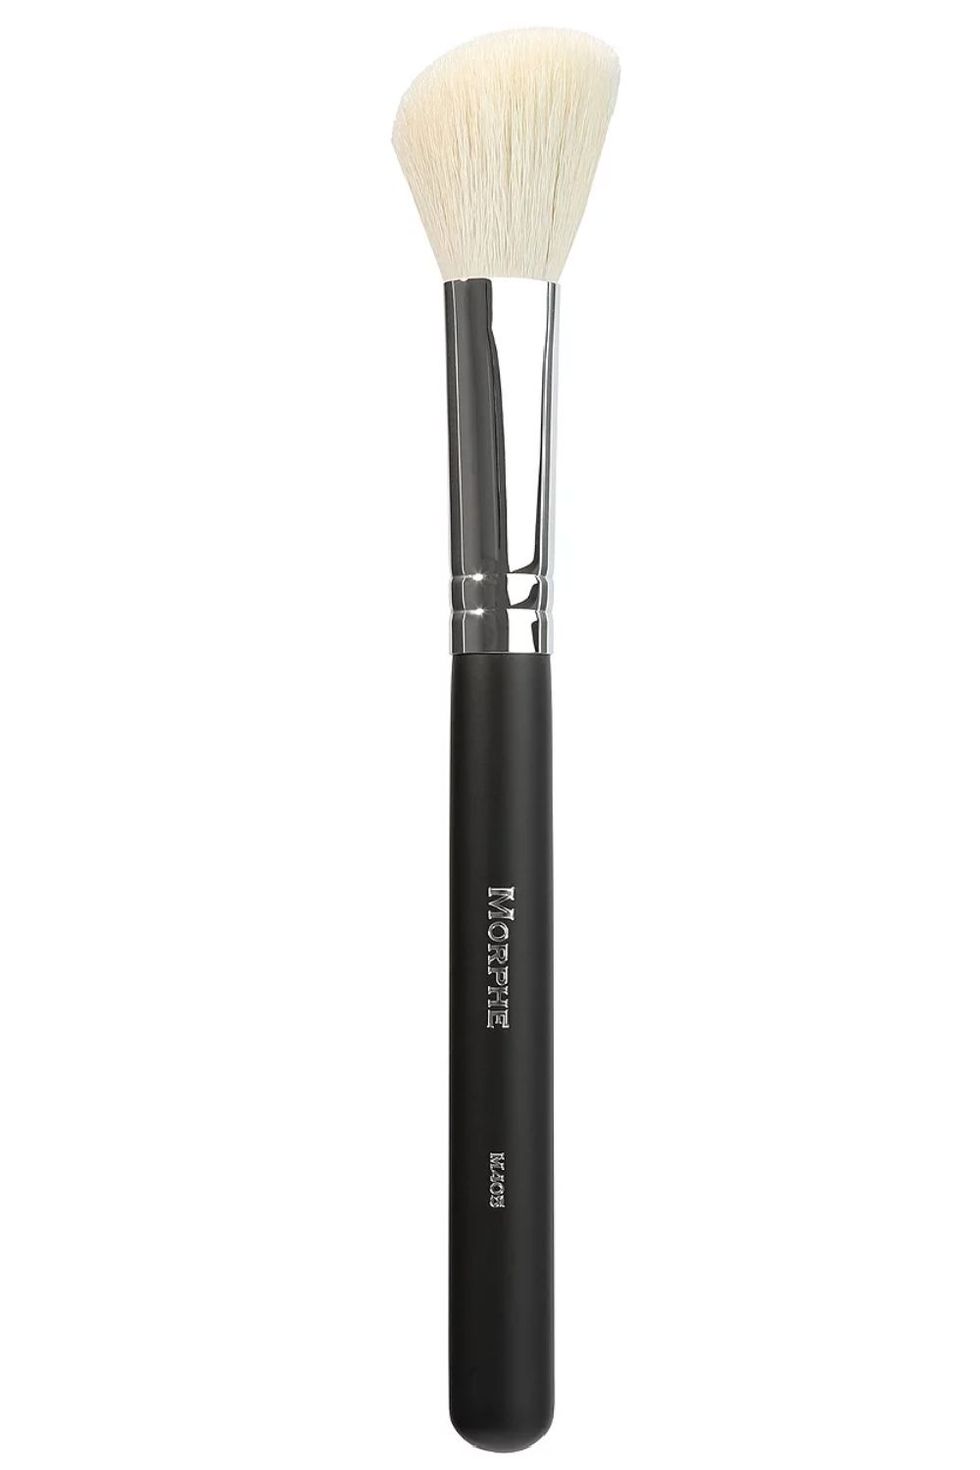 Morphe M405 Contour Brush